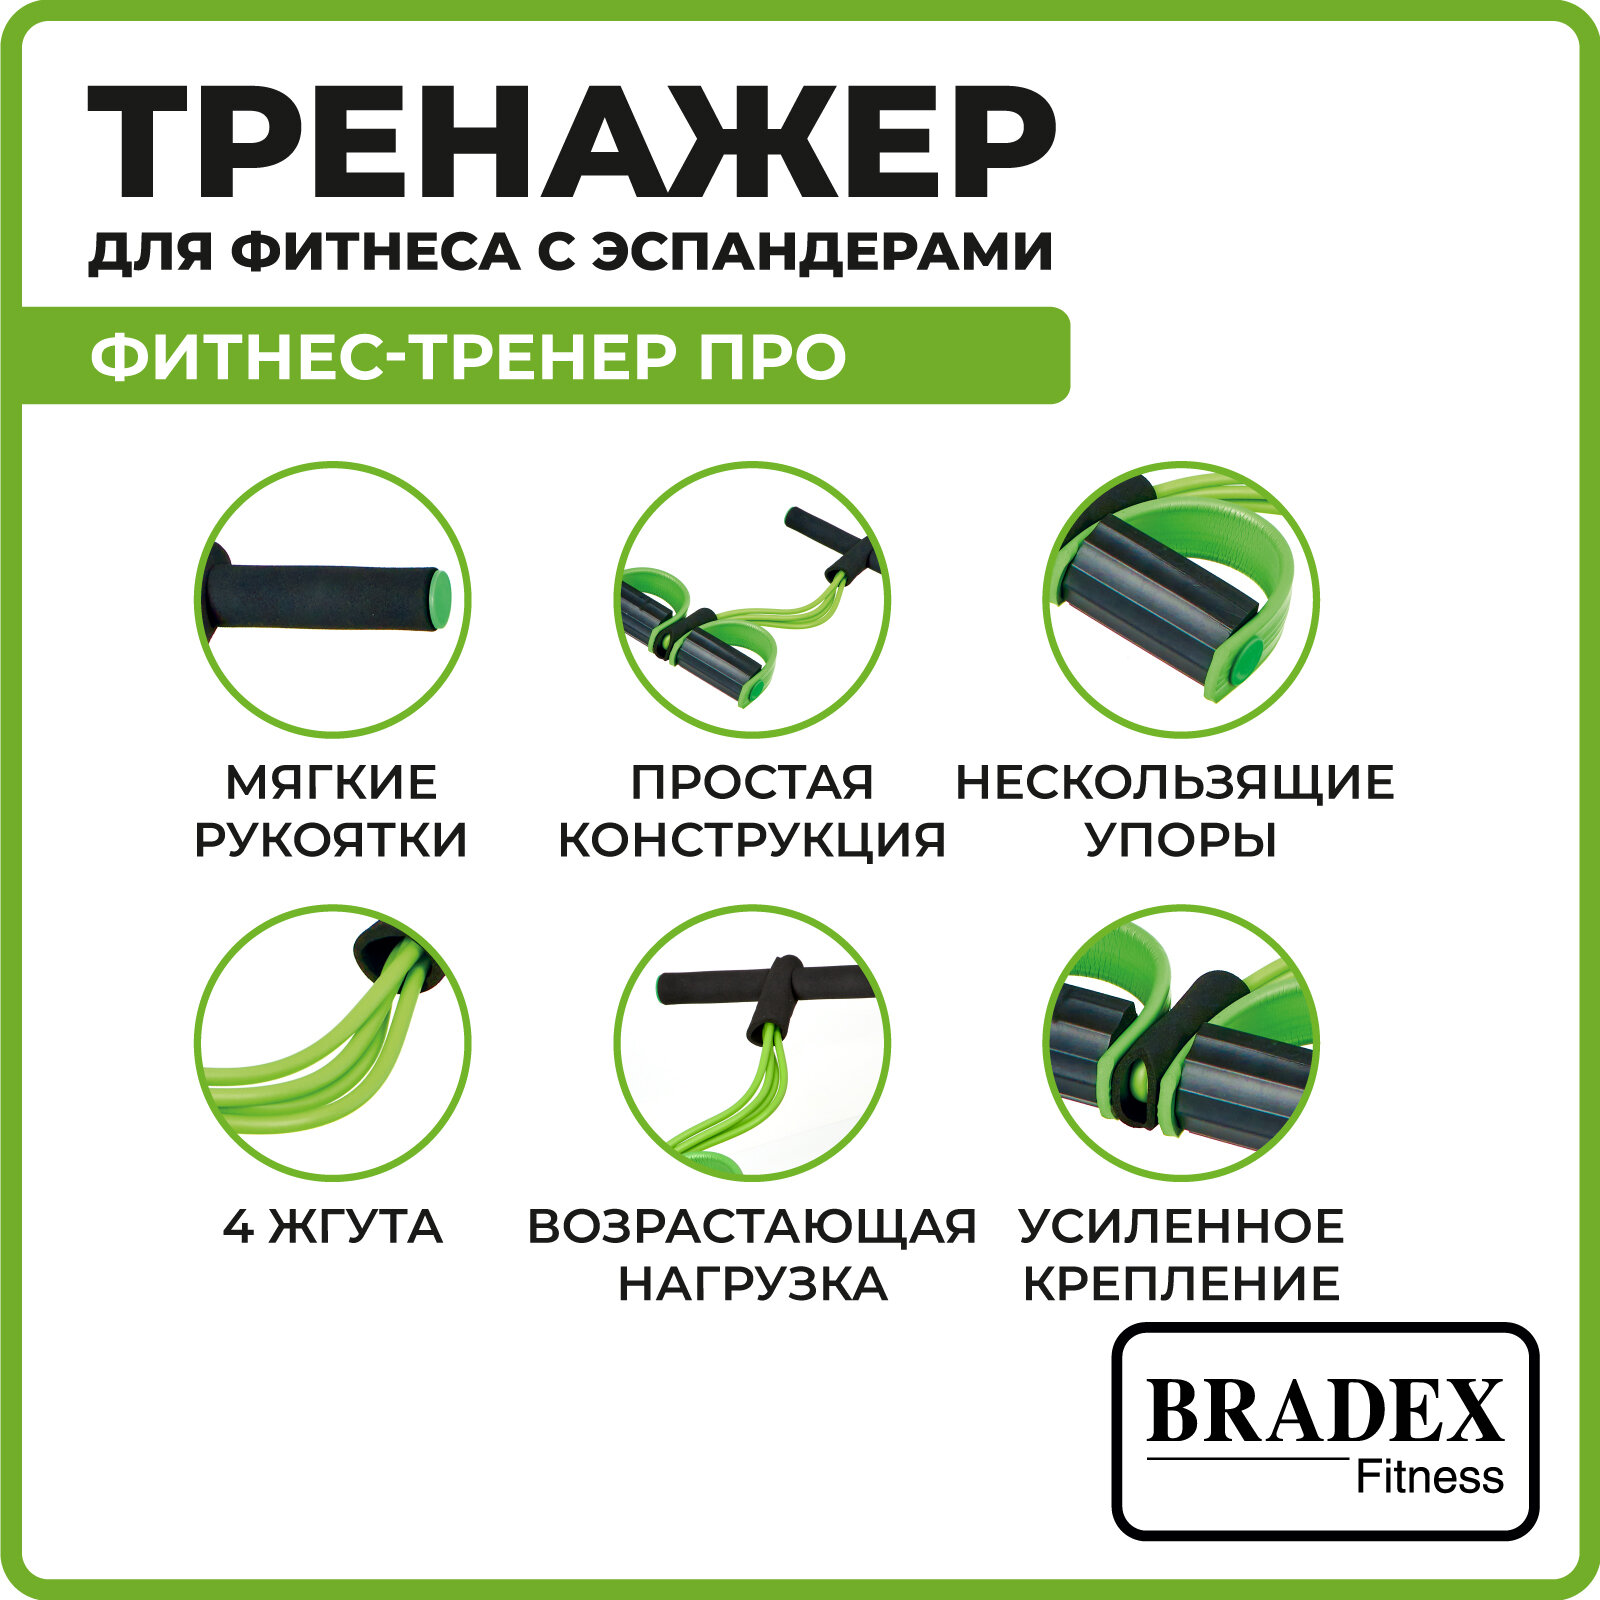 Эспандер Bradex Фитнес-Тренер Про для разных групп мышц салатовый/черный (SF 0722) - фото №3